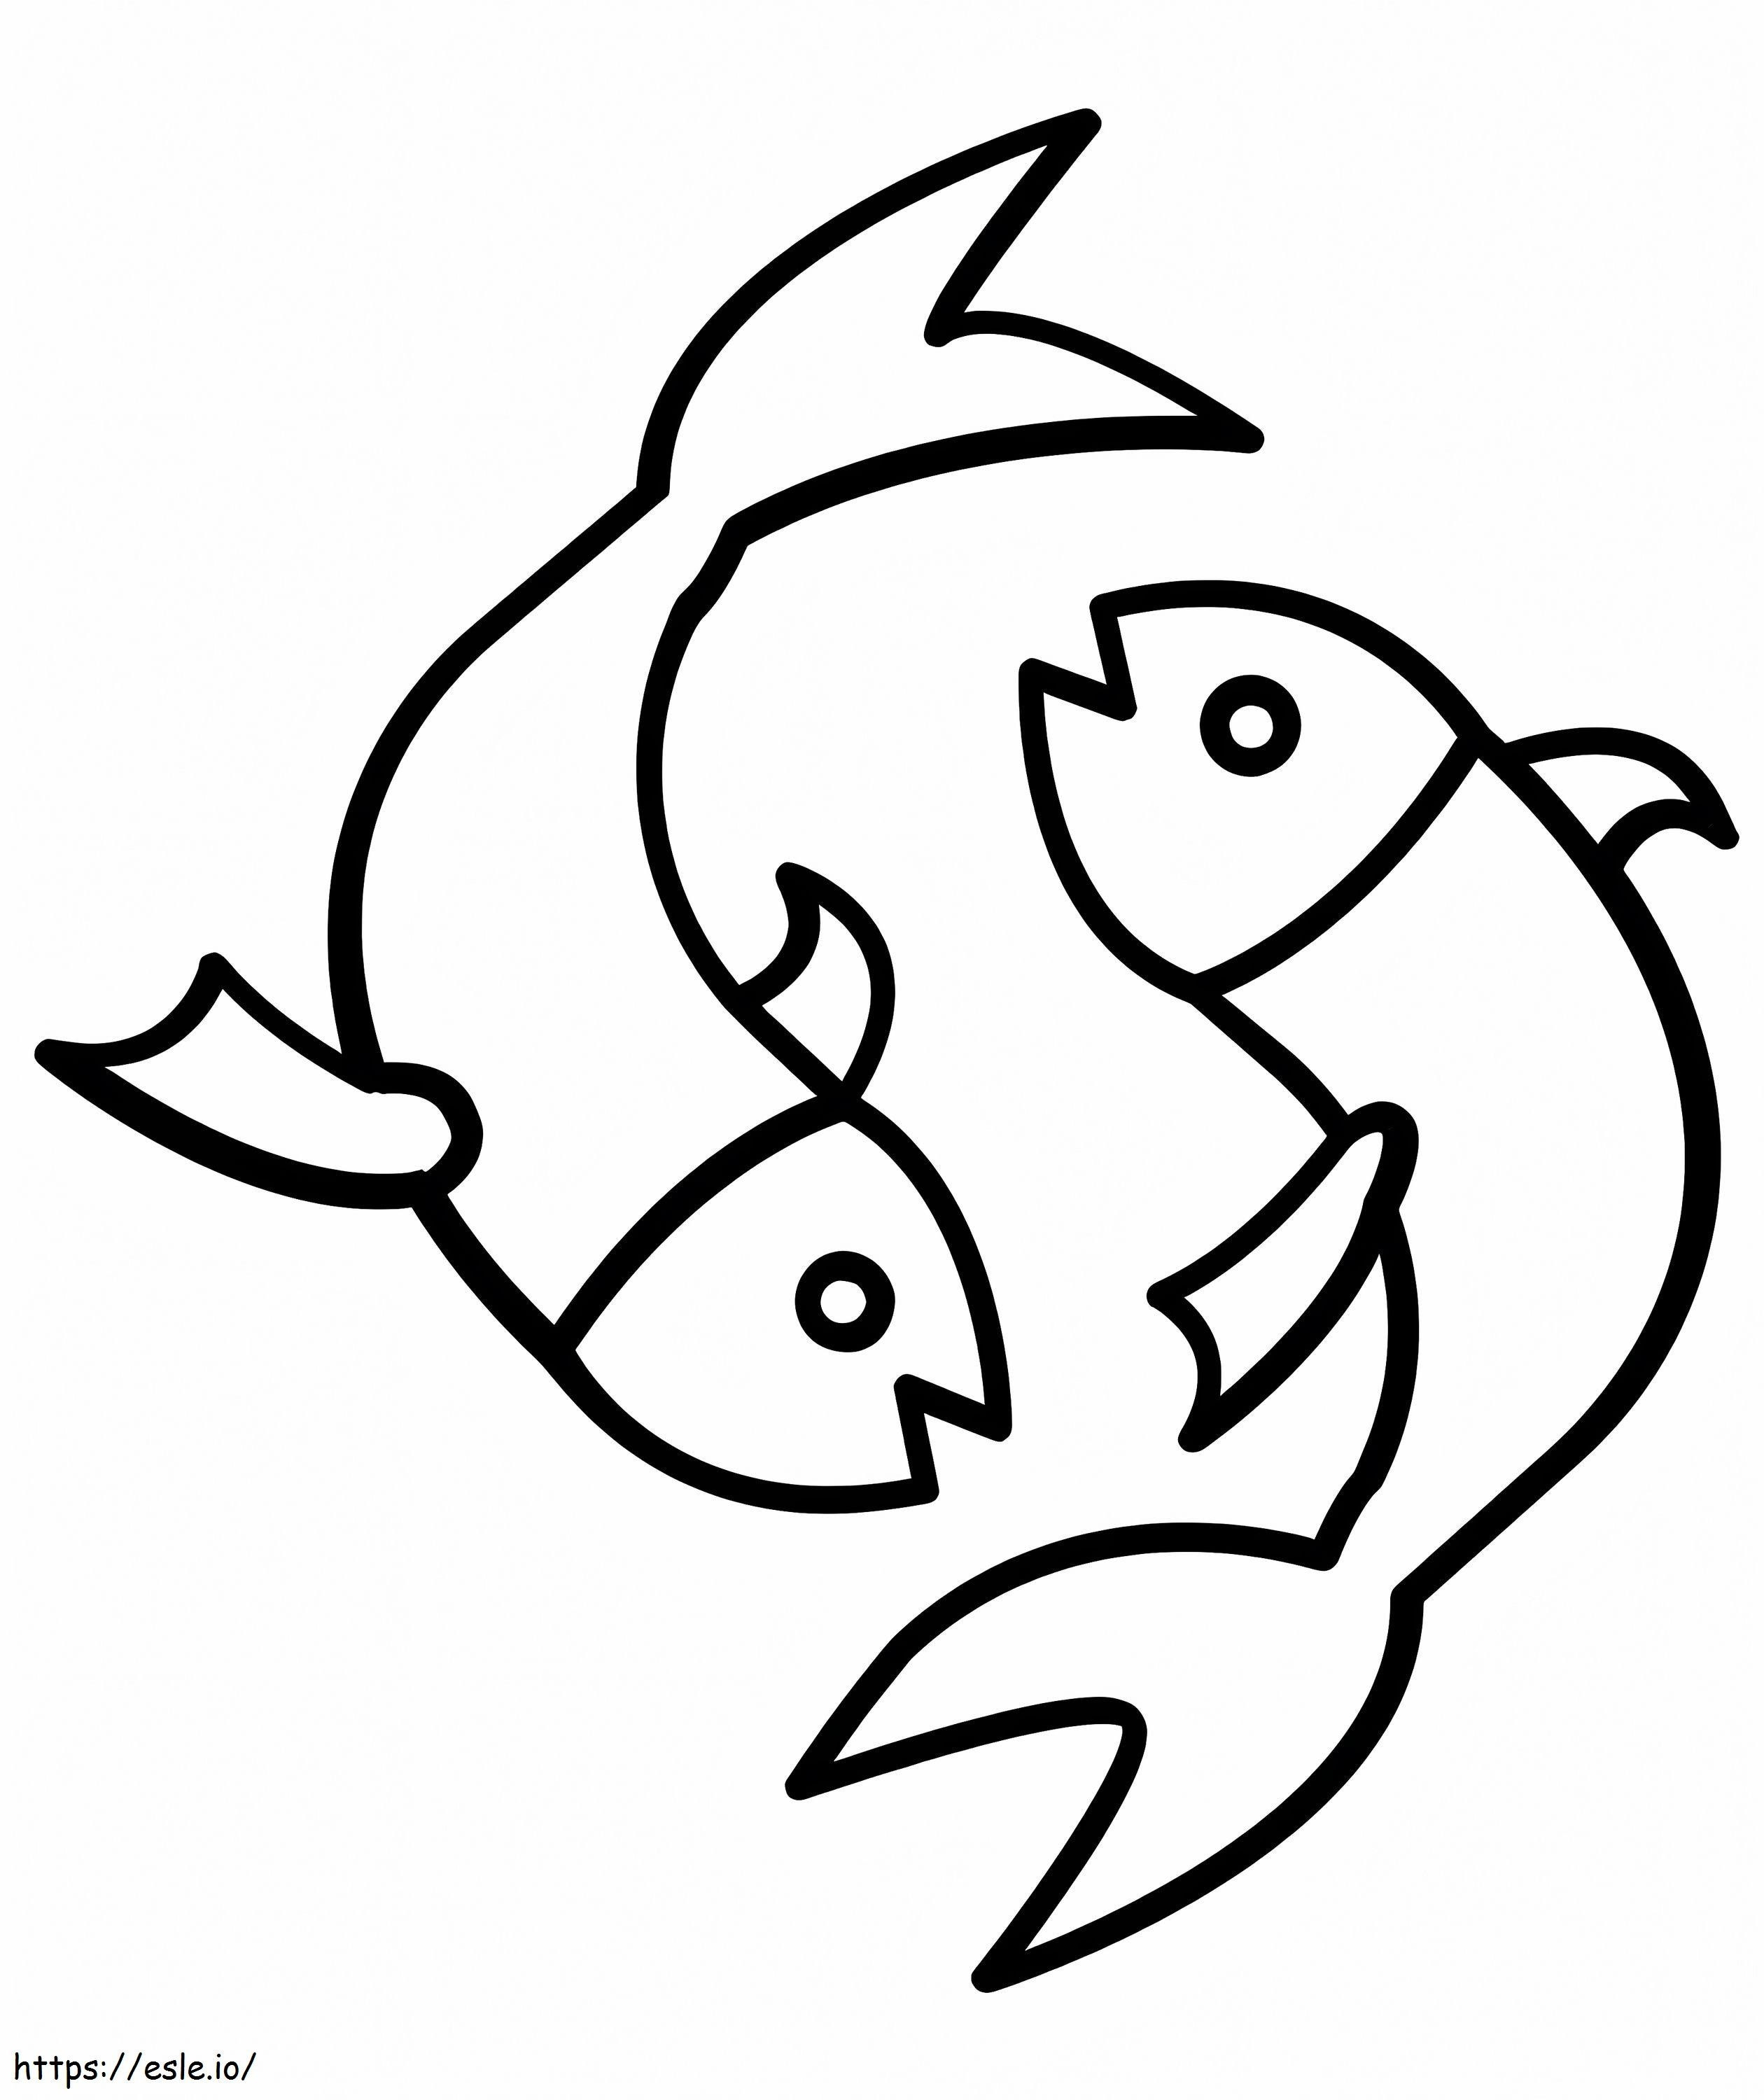 Simbol ușor de pești de colorat